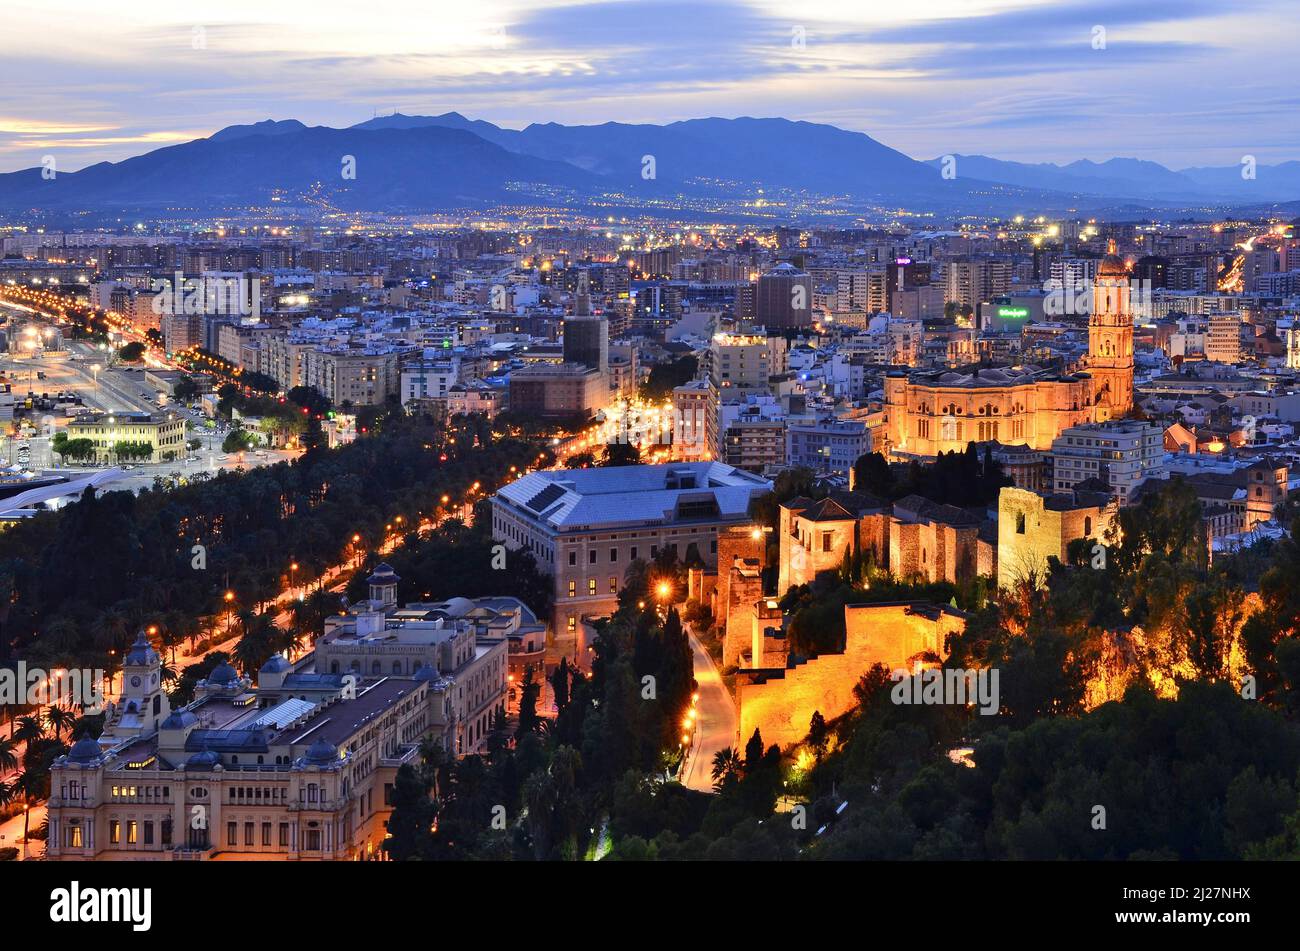 Città di Malaga con la fortezza medievale di Alcazaba e la cattedrale illuminata al crepuscolo, vista elevata dalla collina di Gibralfaro, Andalusia Spagna. Foto Stock